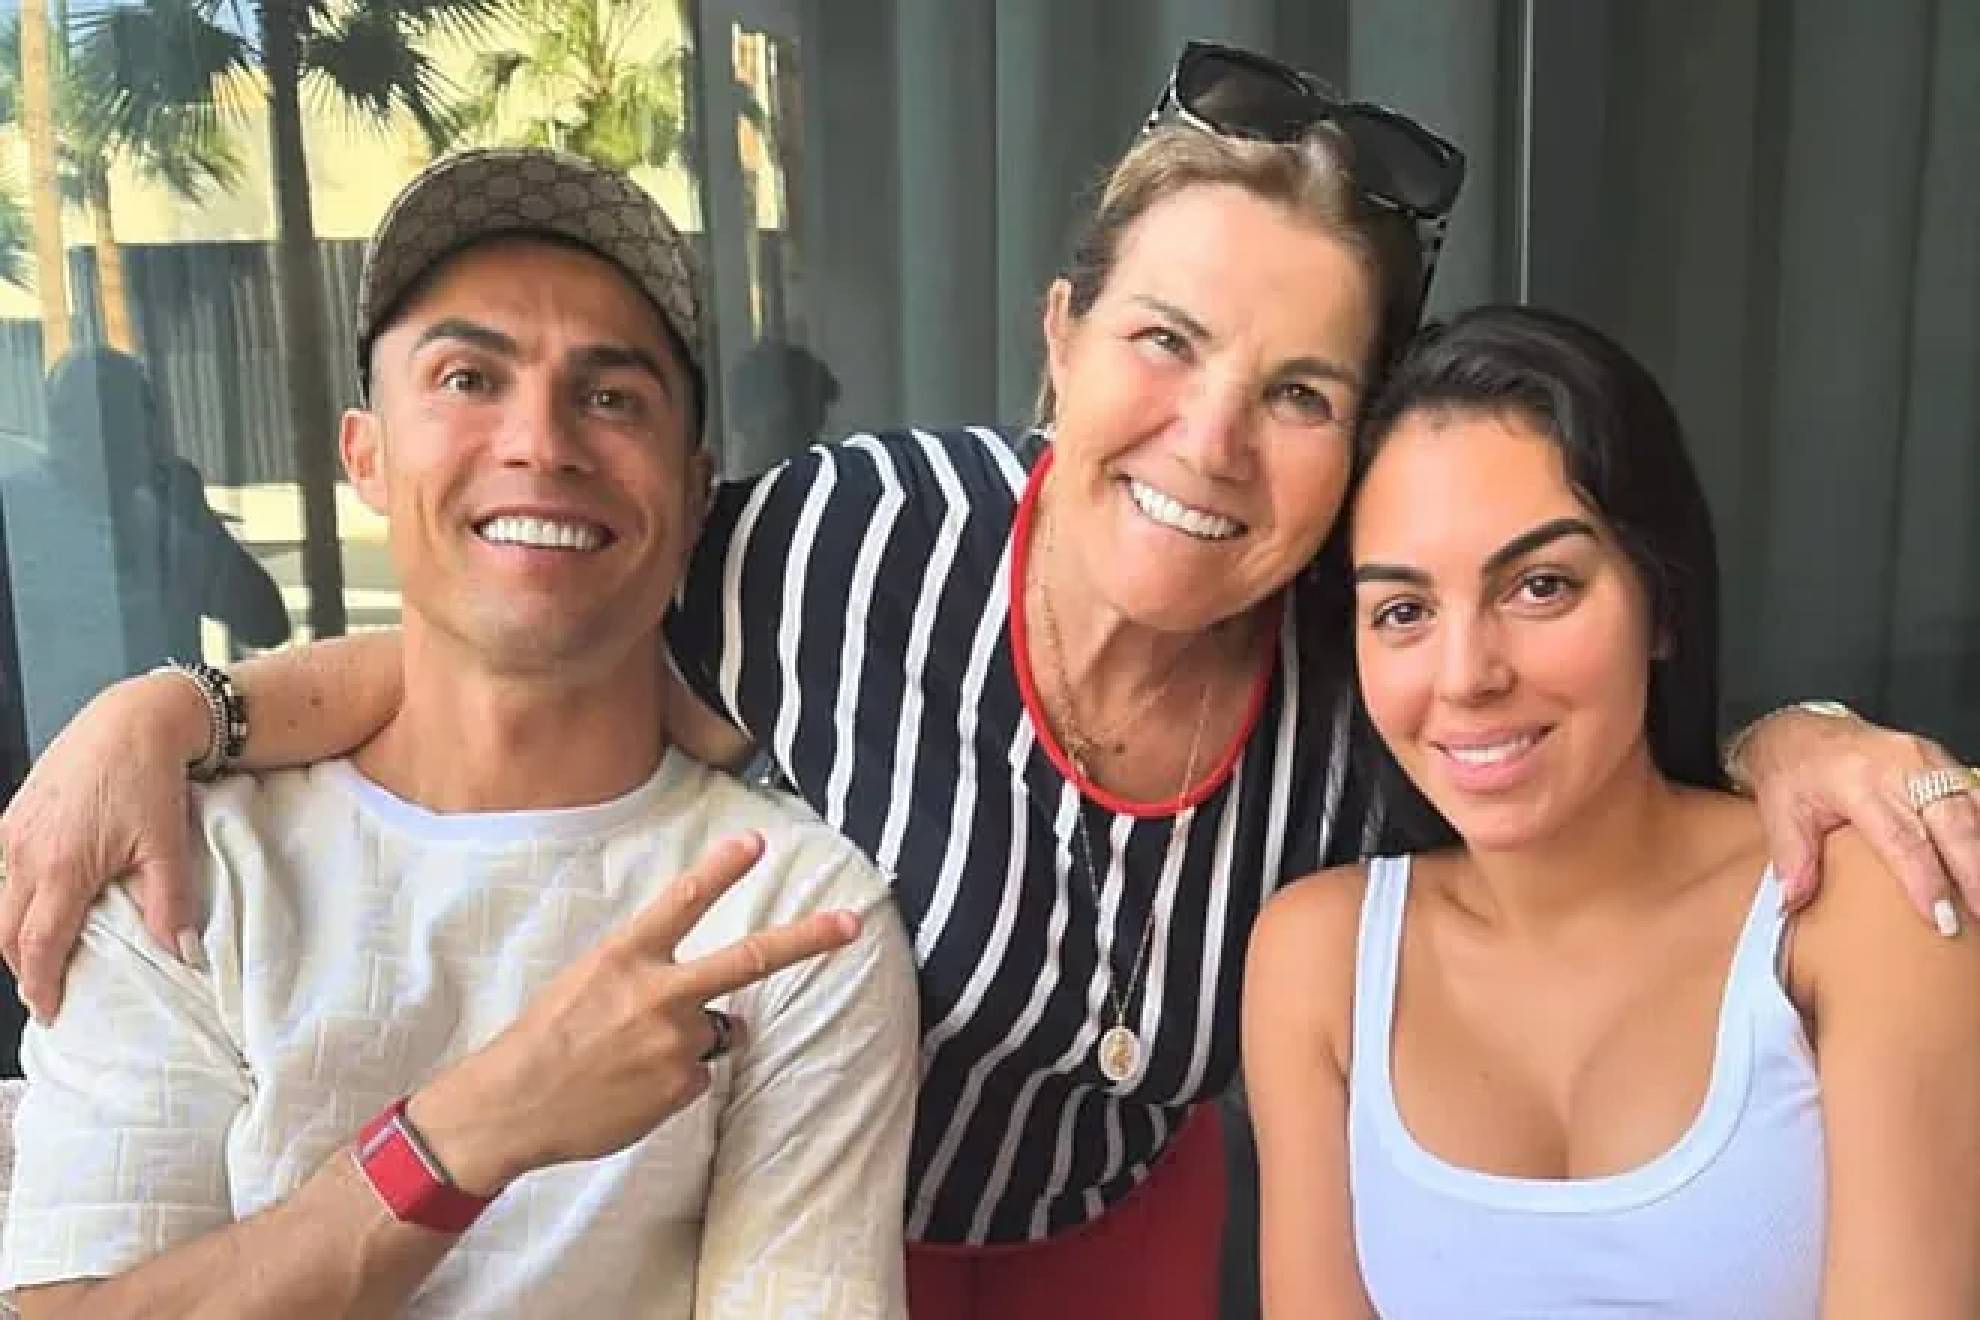 La familia de Cristiano Ronaldo comparte su buena relaci�n a pesar de los rumores.